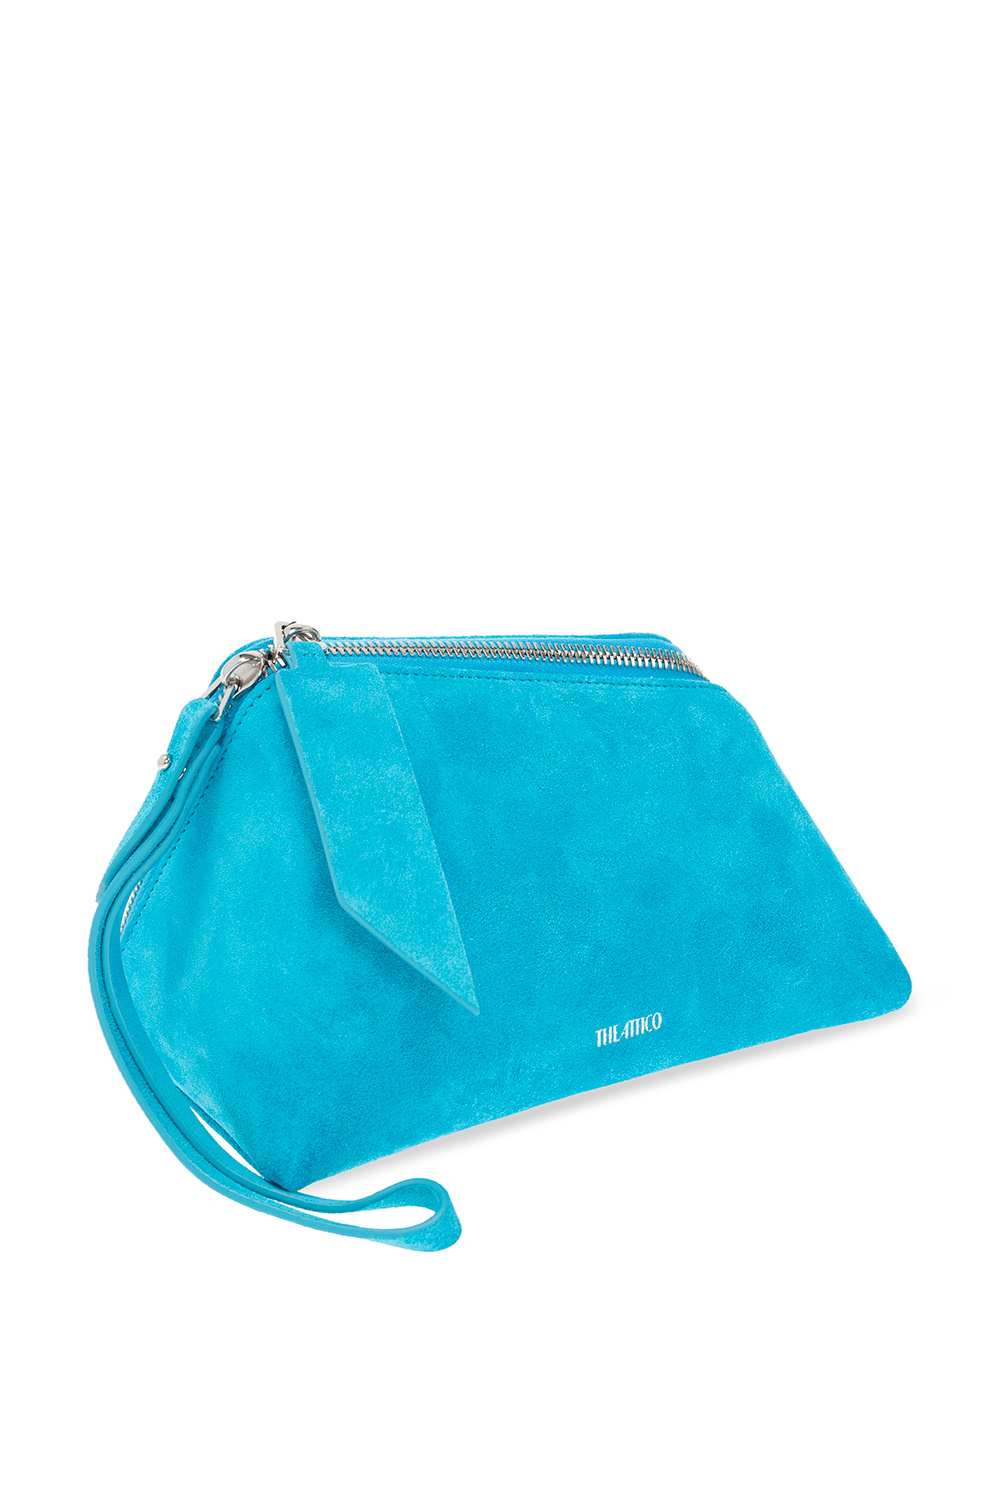 The Attico ‘Saturday’ handbag